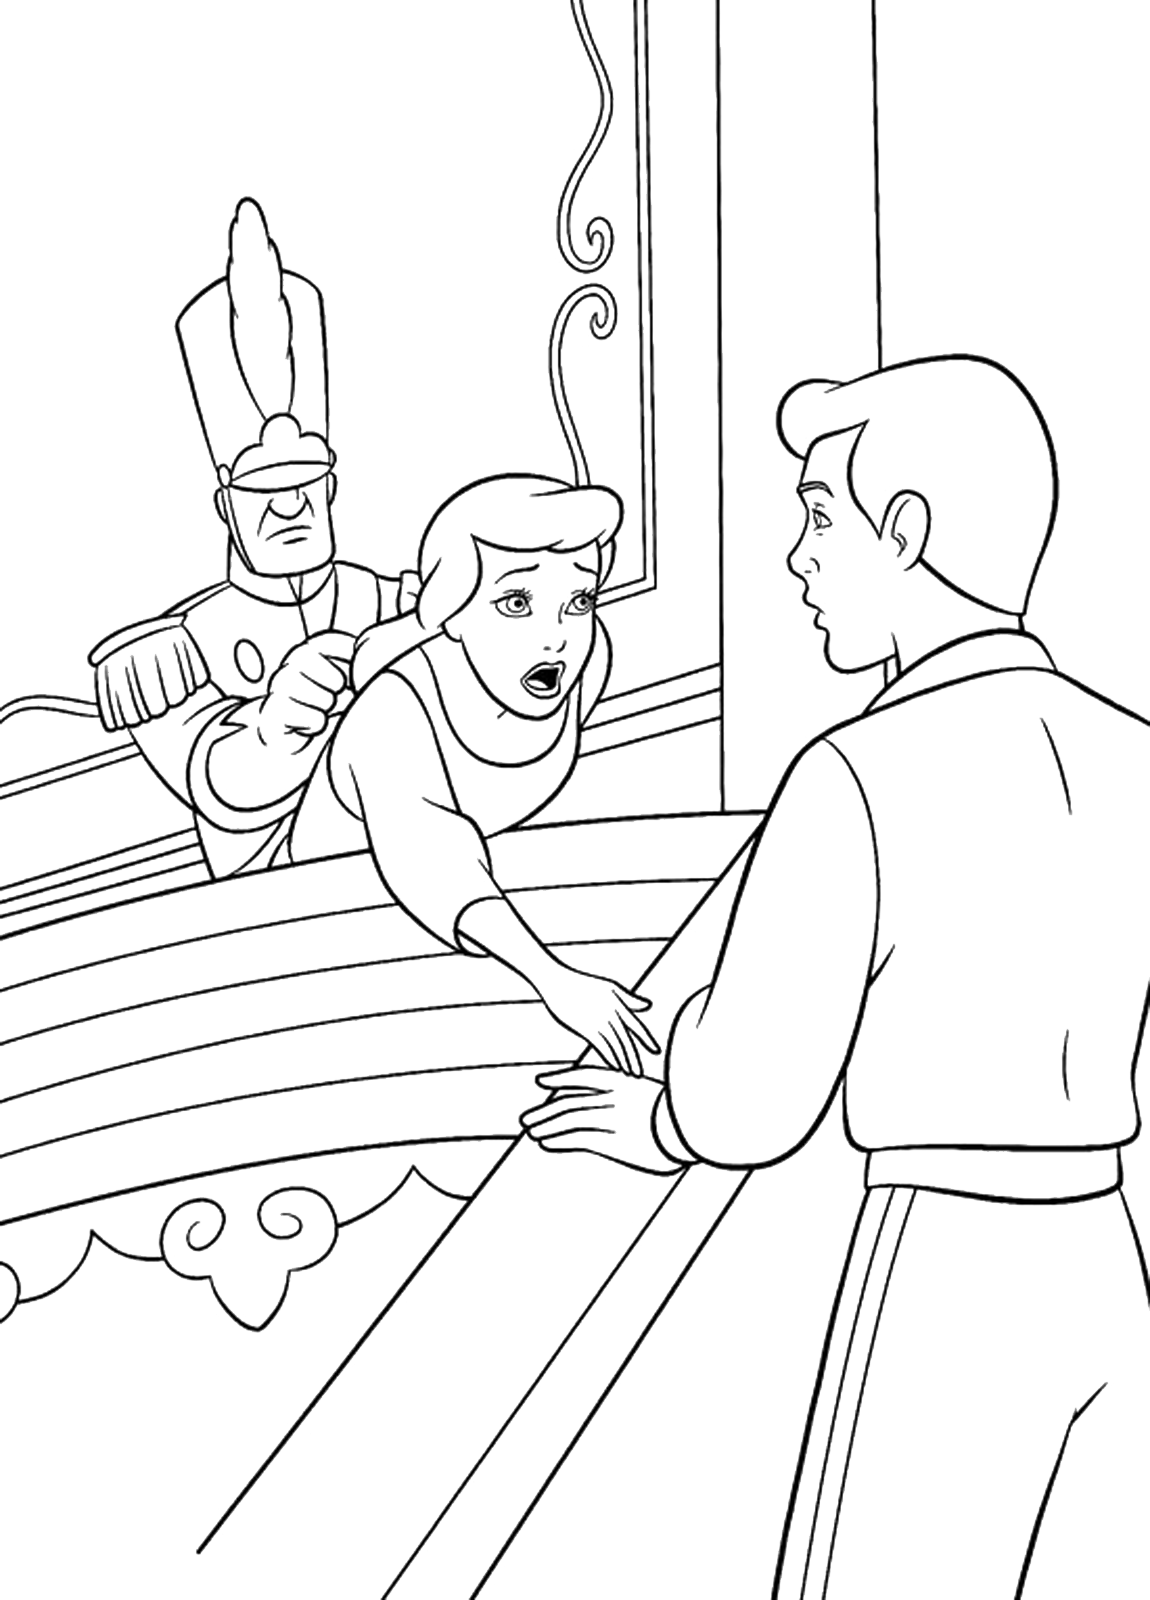 Cenerentola - Una guardia cerca di allontanare Cenerentola dal Principe